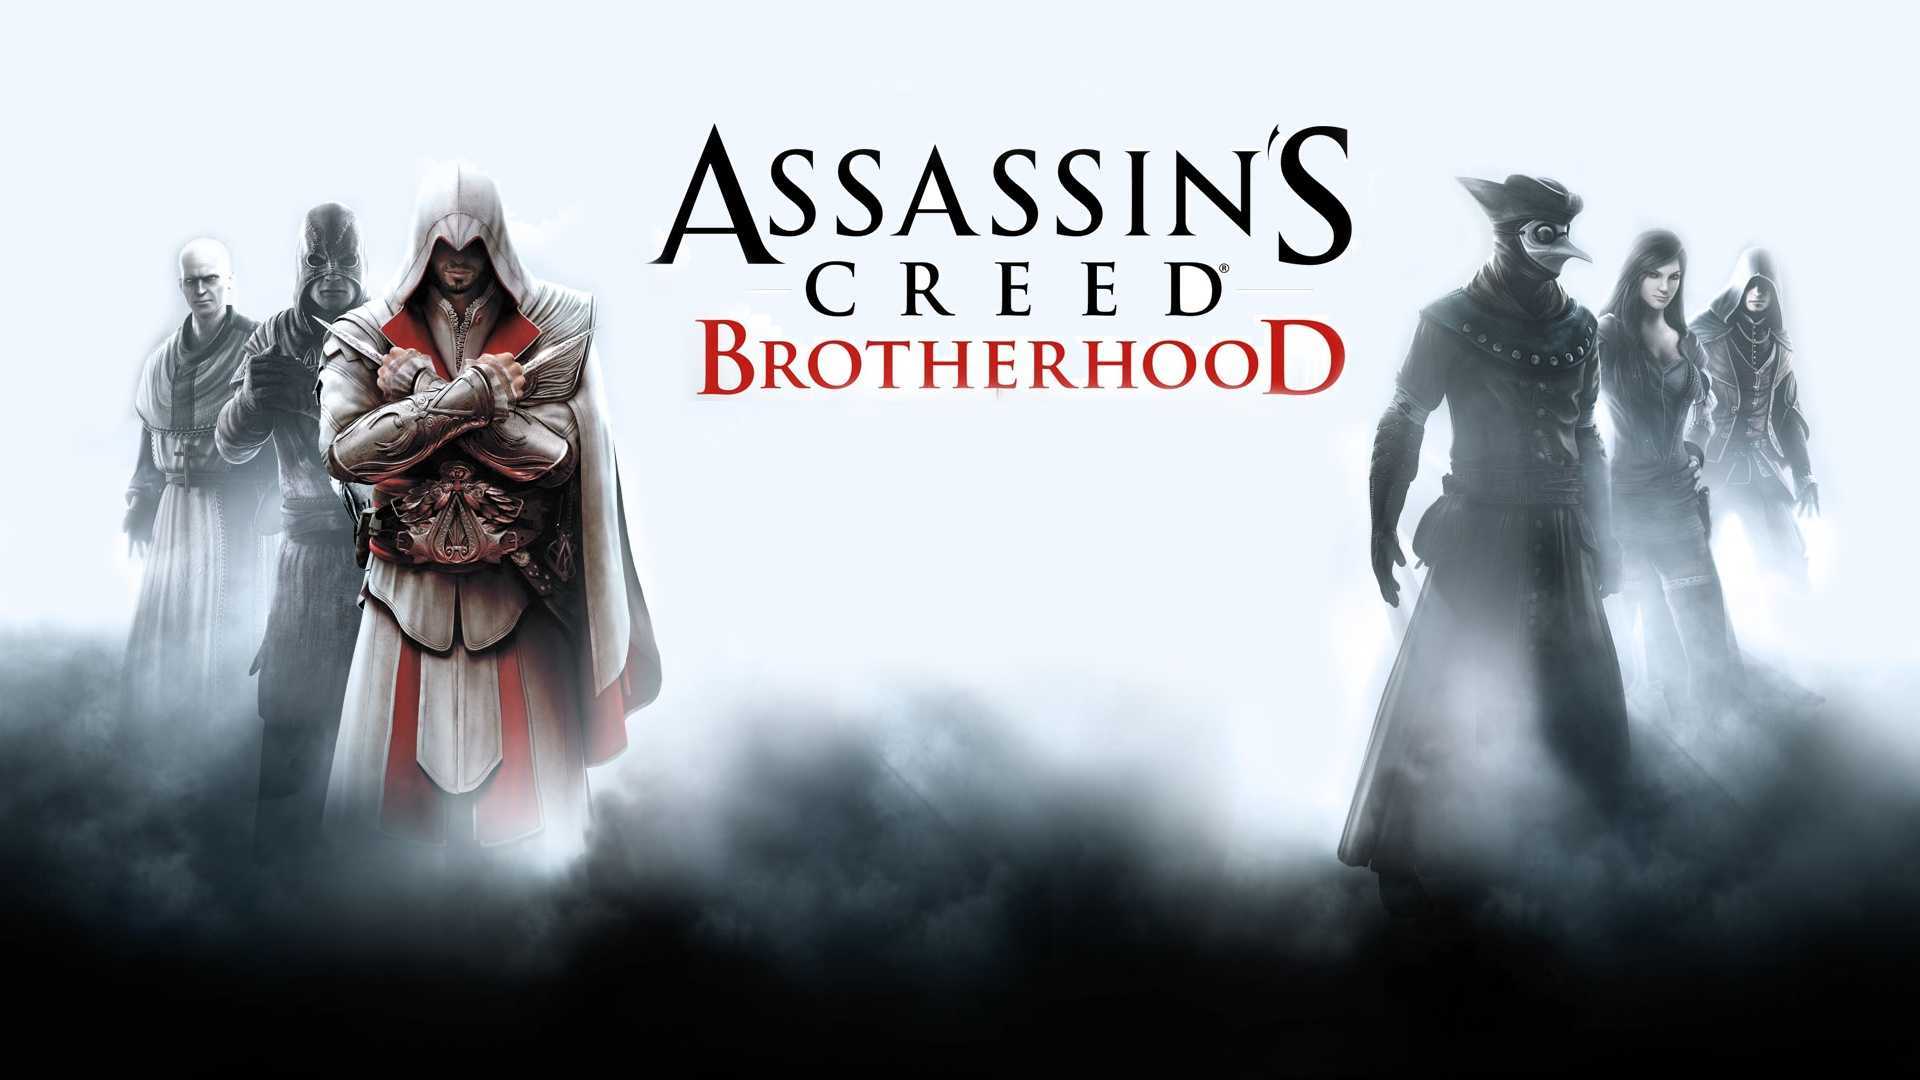 Проверь свой ПК - Минимальные и рекомендуемые требования для PC версии Assassins Creed: Brotherhood: информация о процессоре, видеокарте, оперативной памяти и других характеристиках, необходмых для оптимальной работы игры